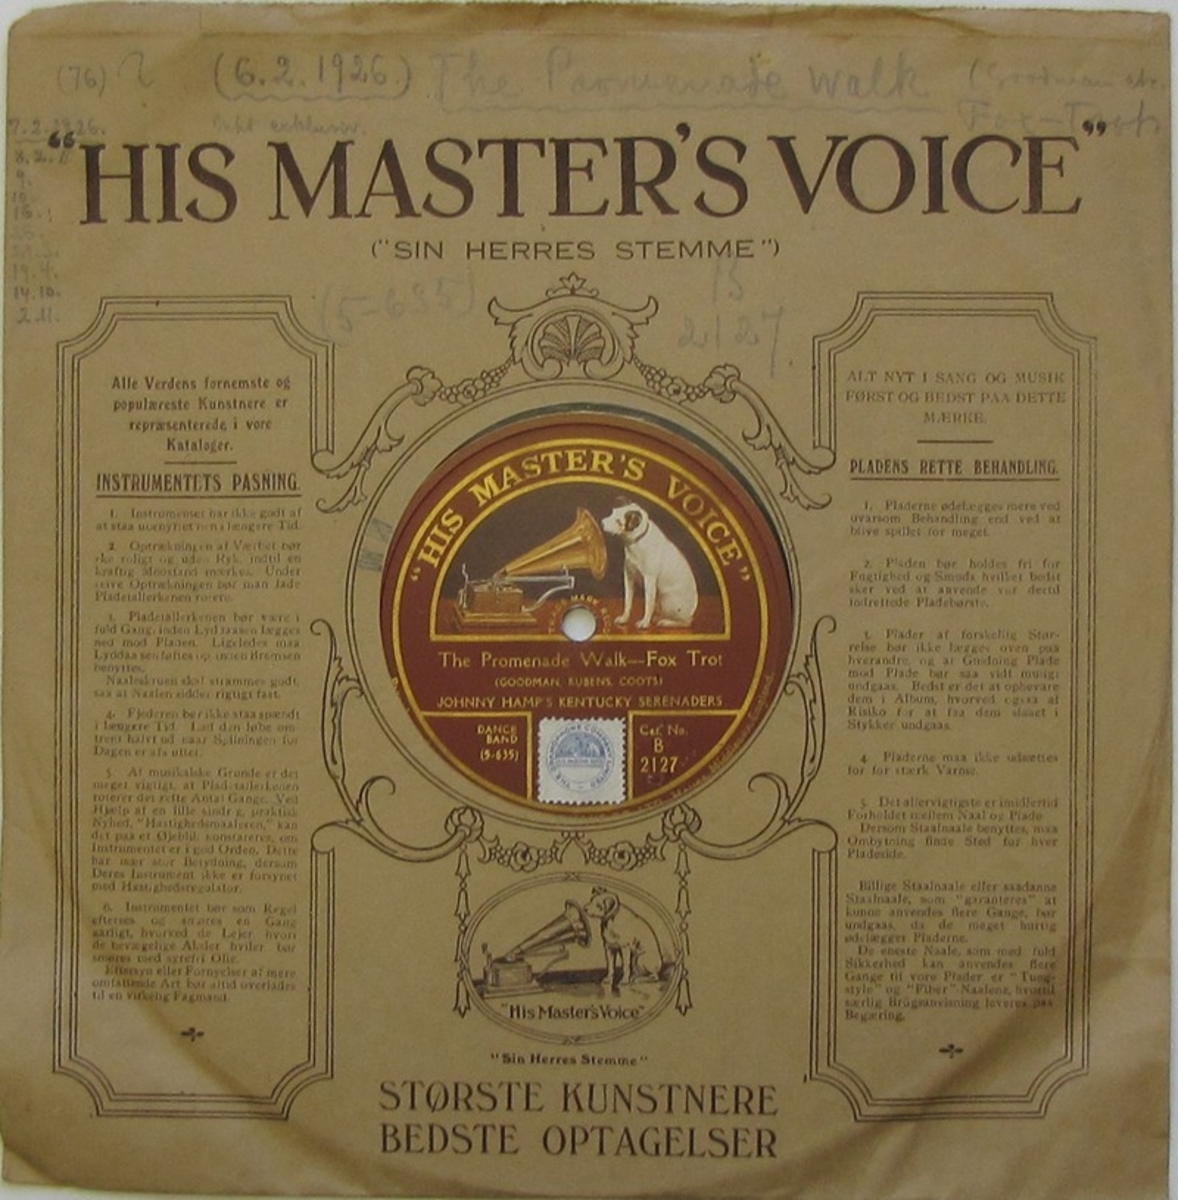 Vinylskiva av märket HMV